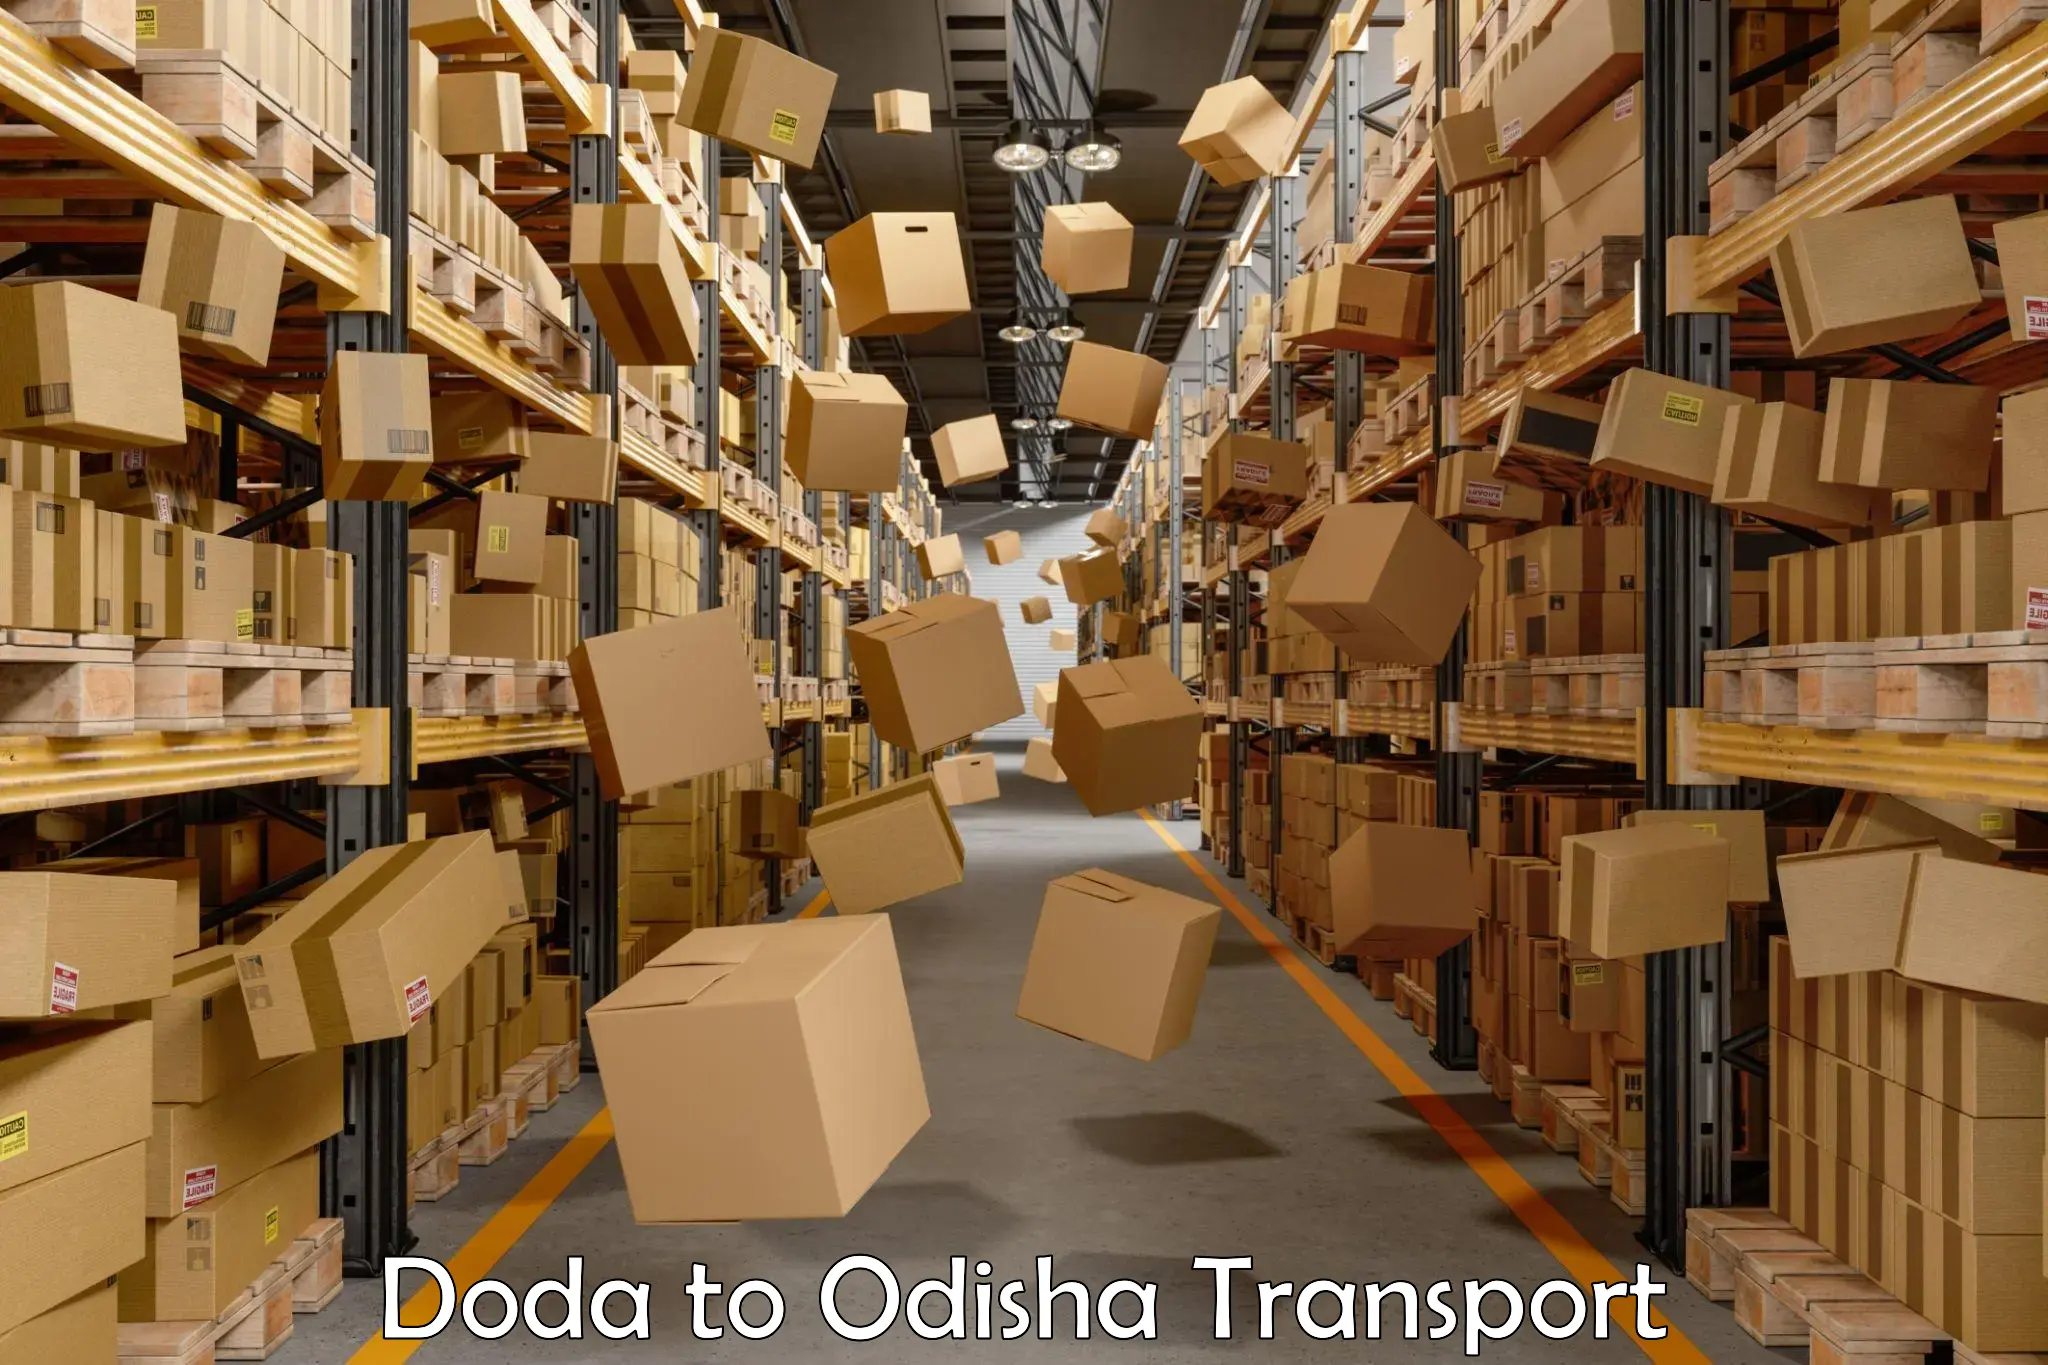 Daily transport service Doda to Sohela